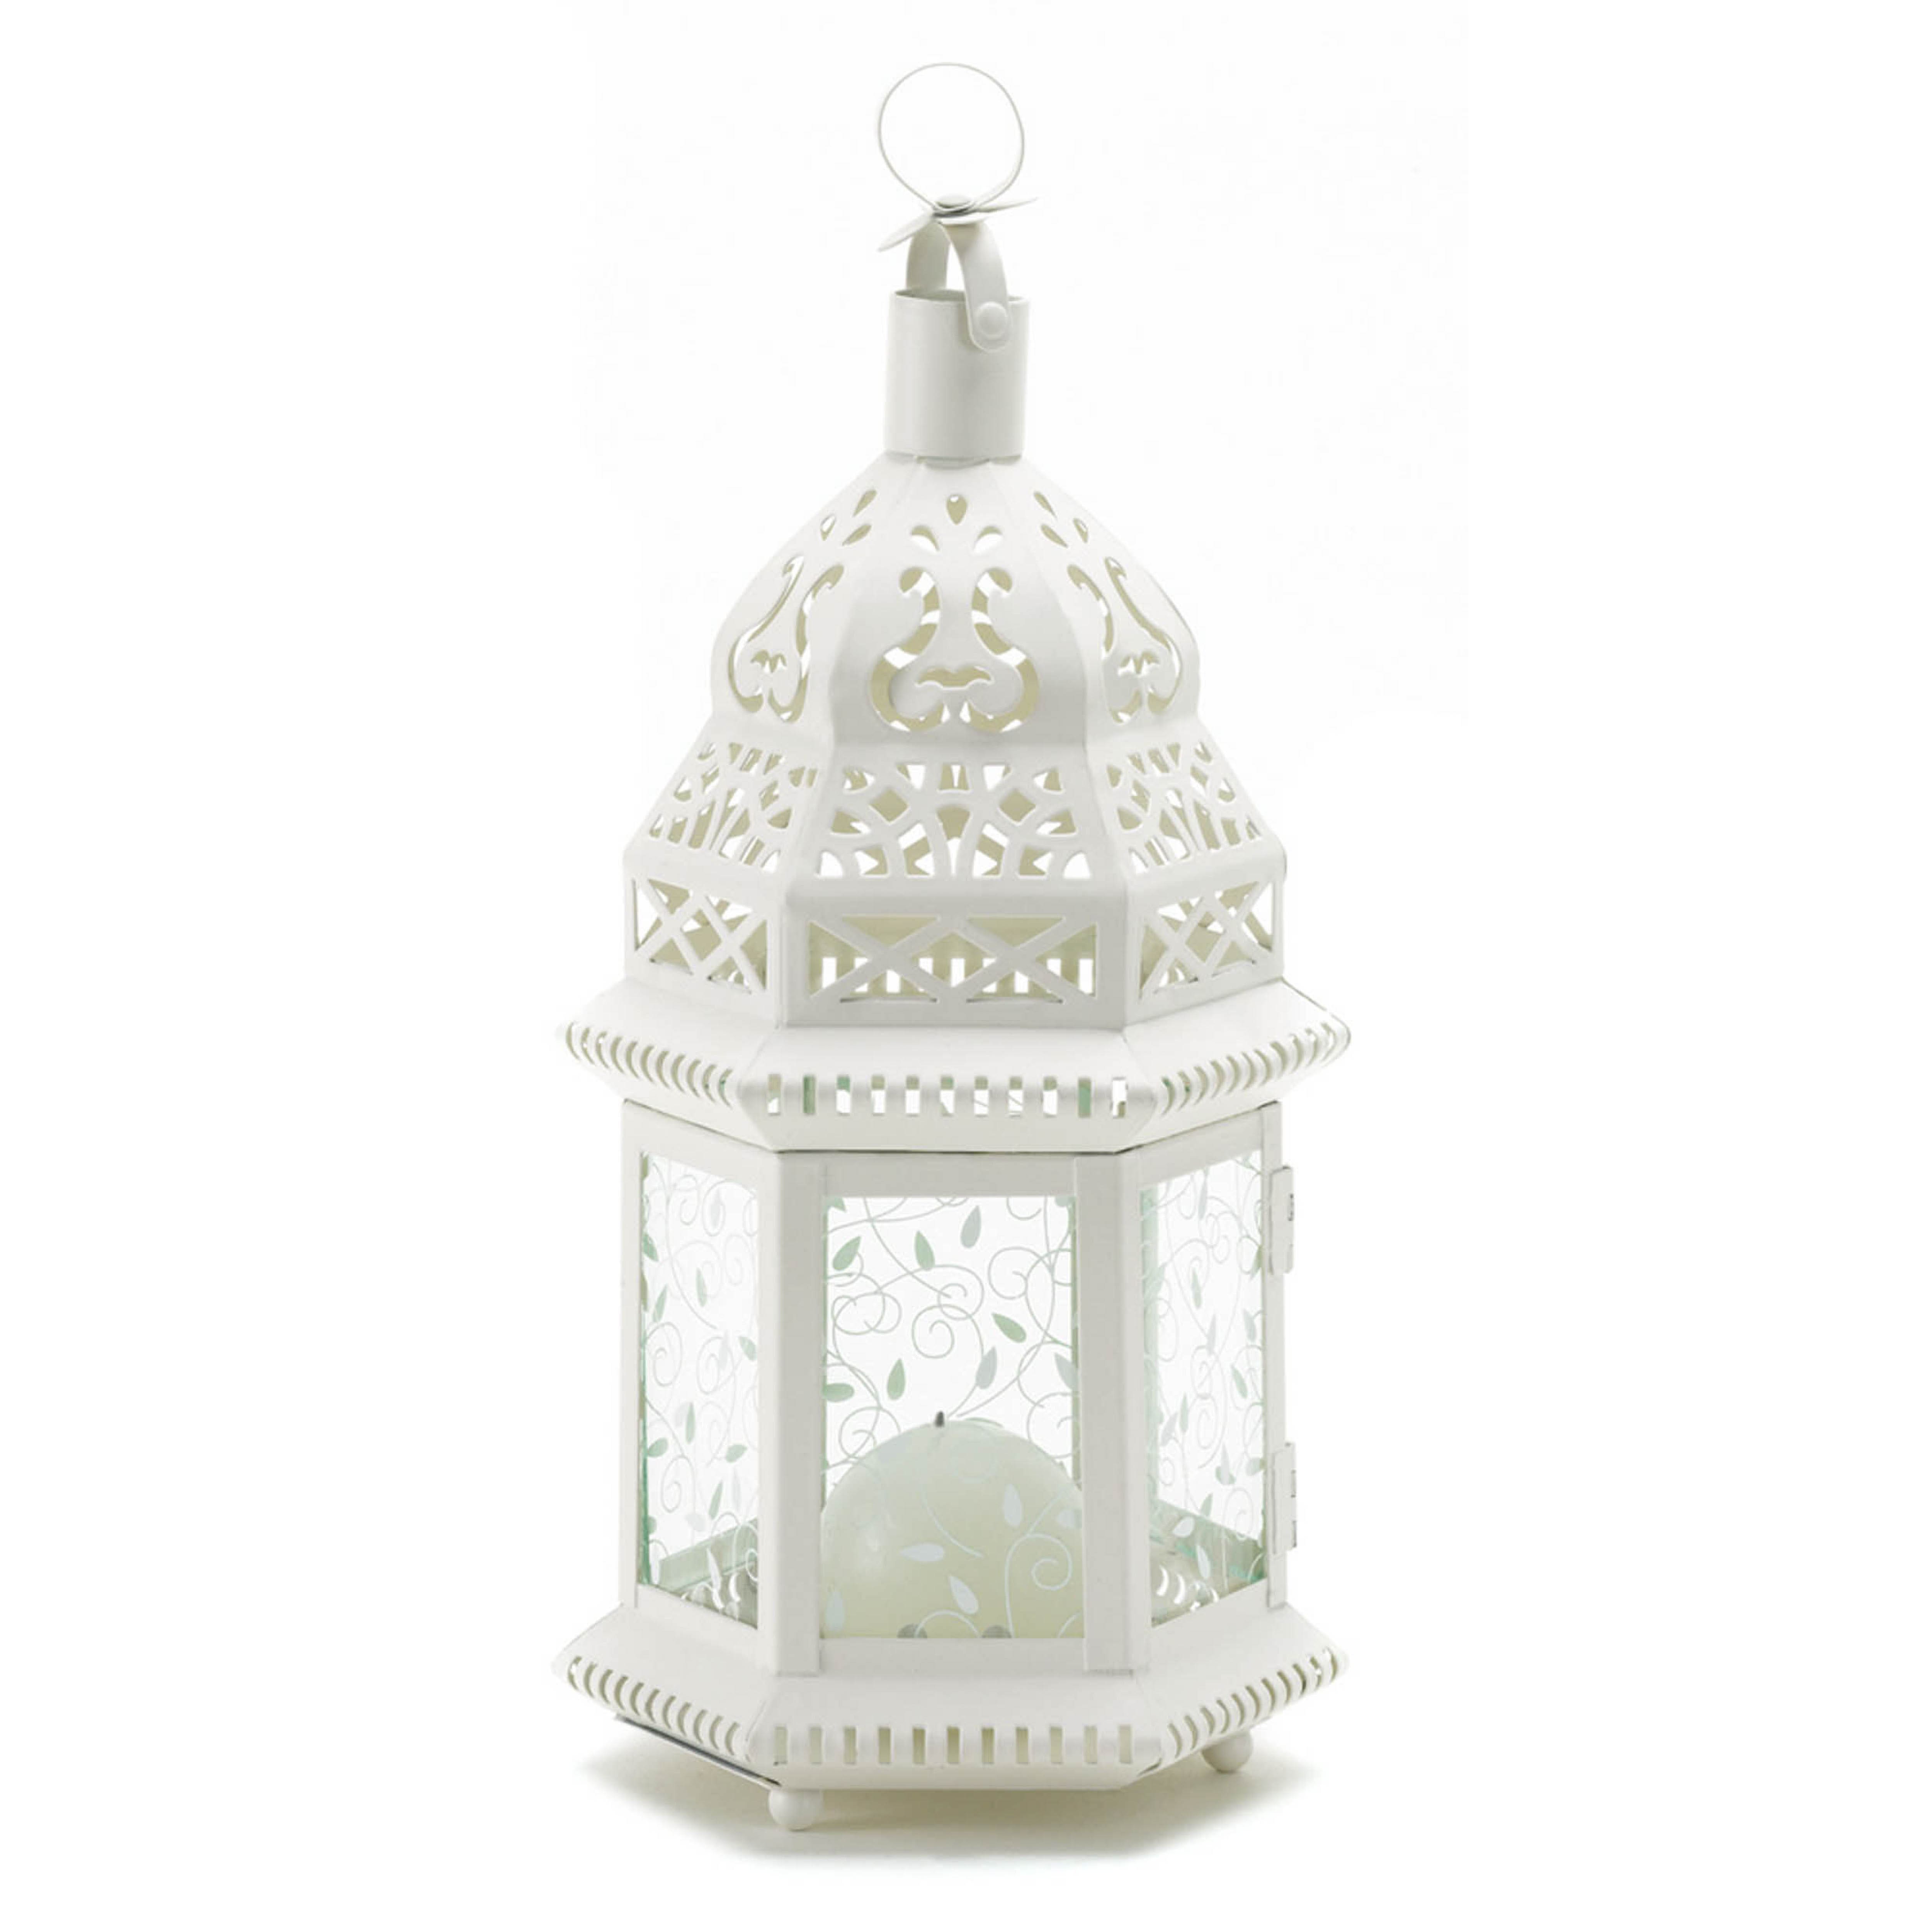 6 White Moroccan 12" whitewashed Candle holder lantern wedding table decoration 